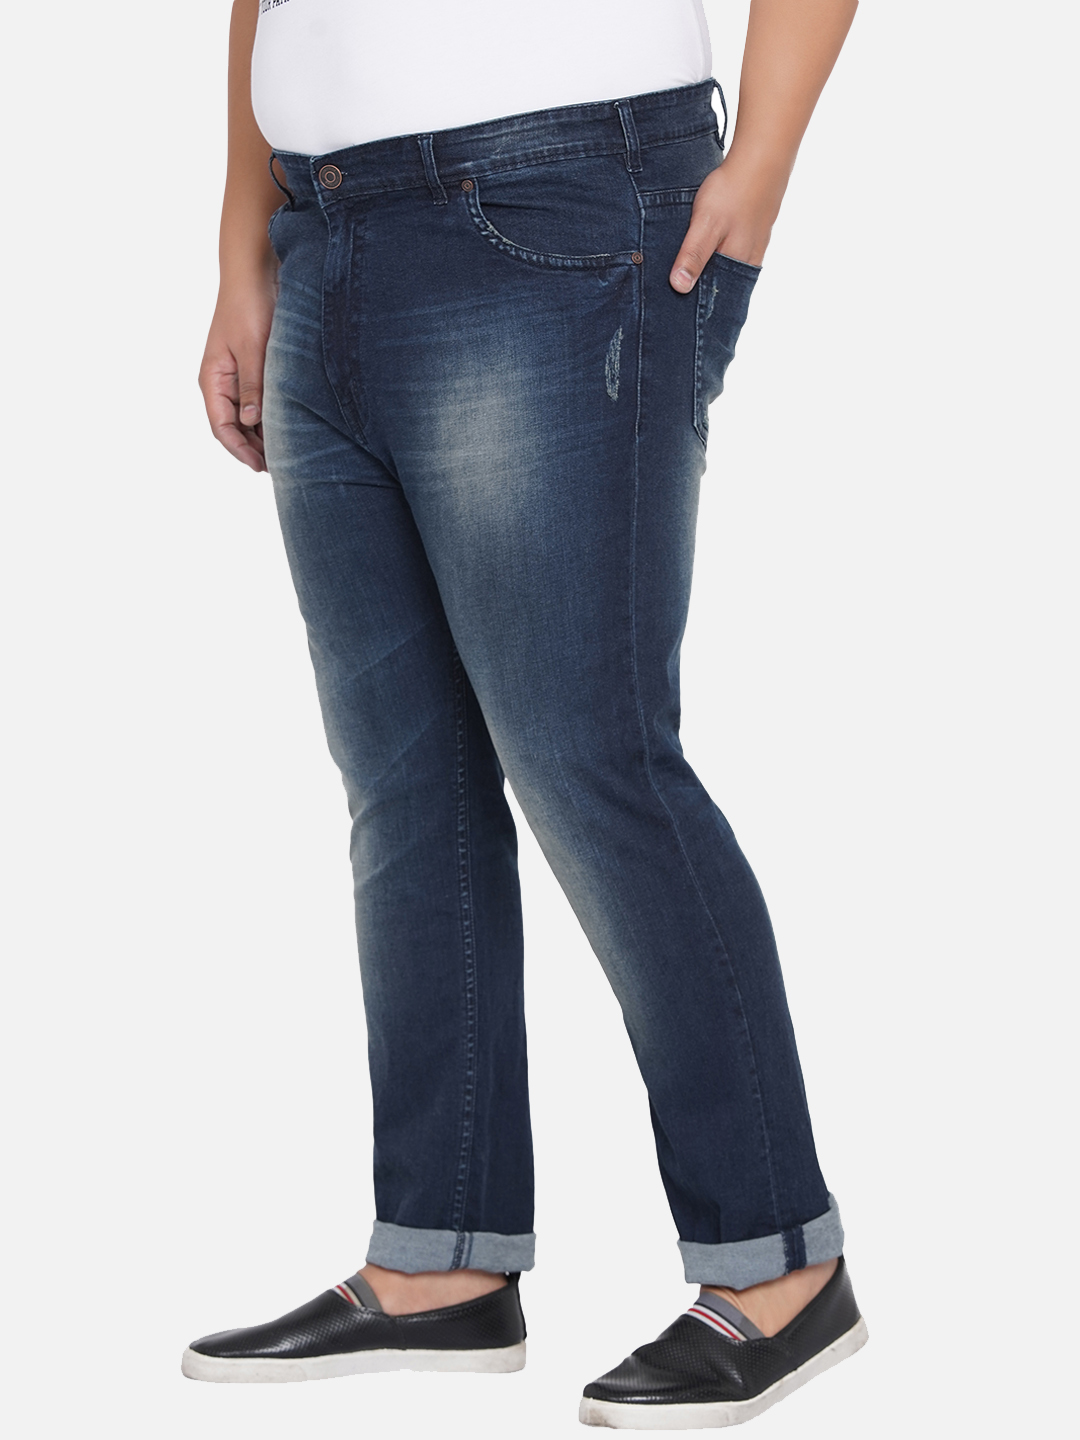 bottomwear/jeans/JPJ12205/jpj12205-4.jpg